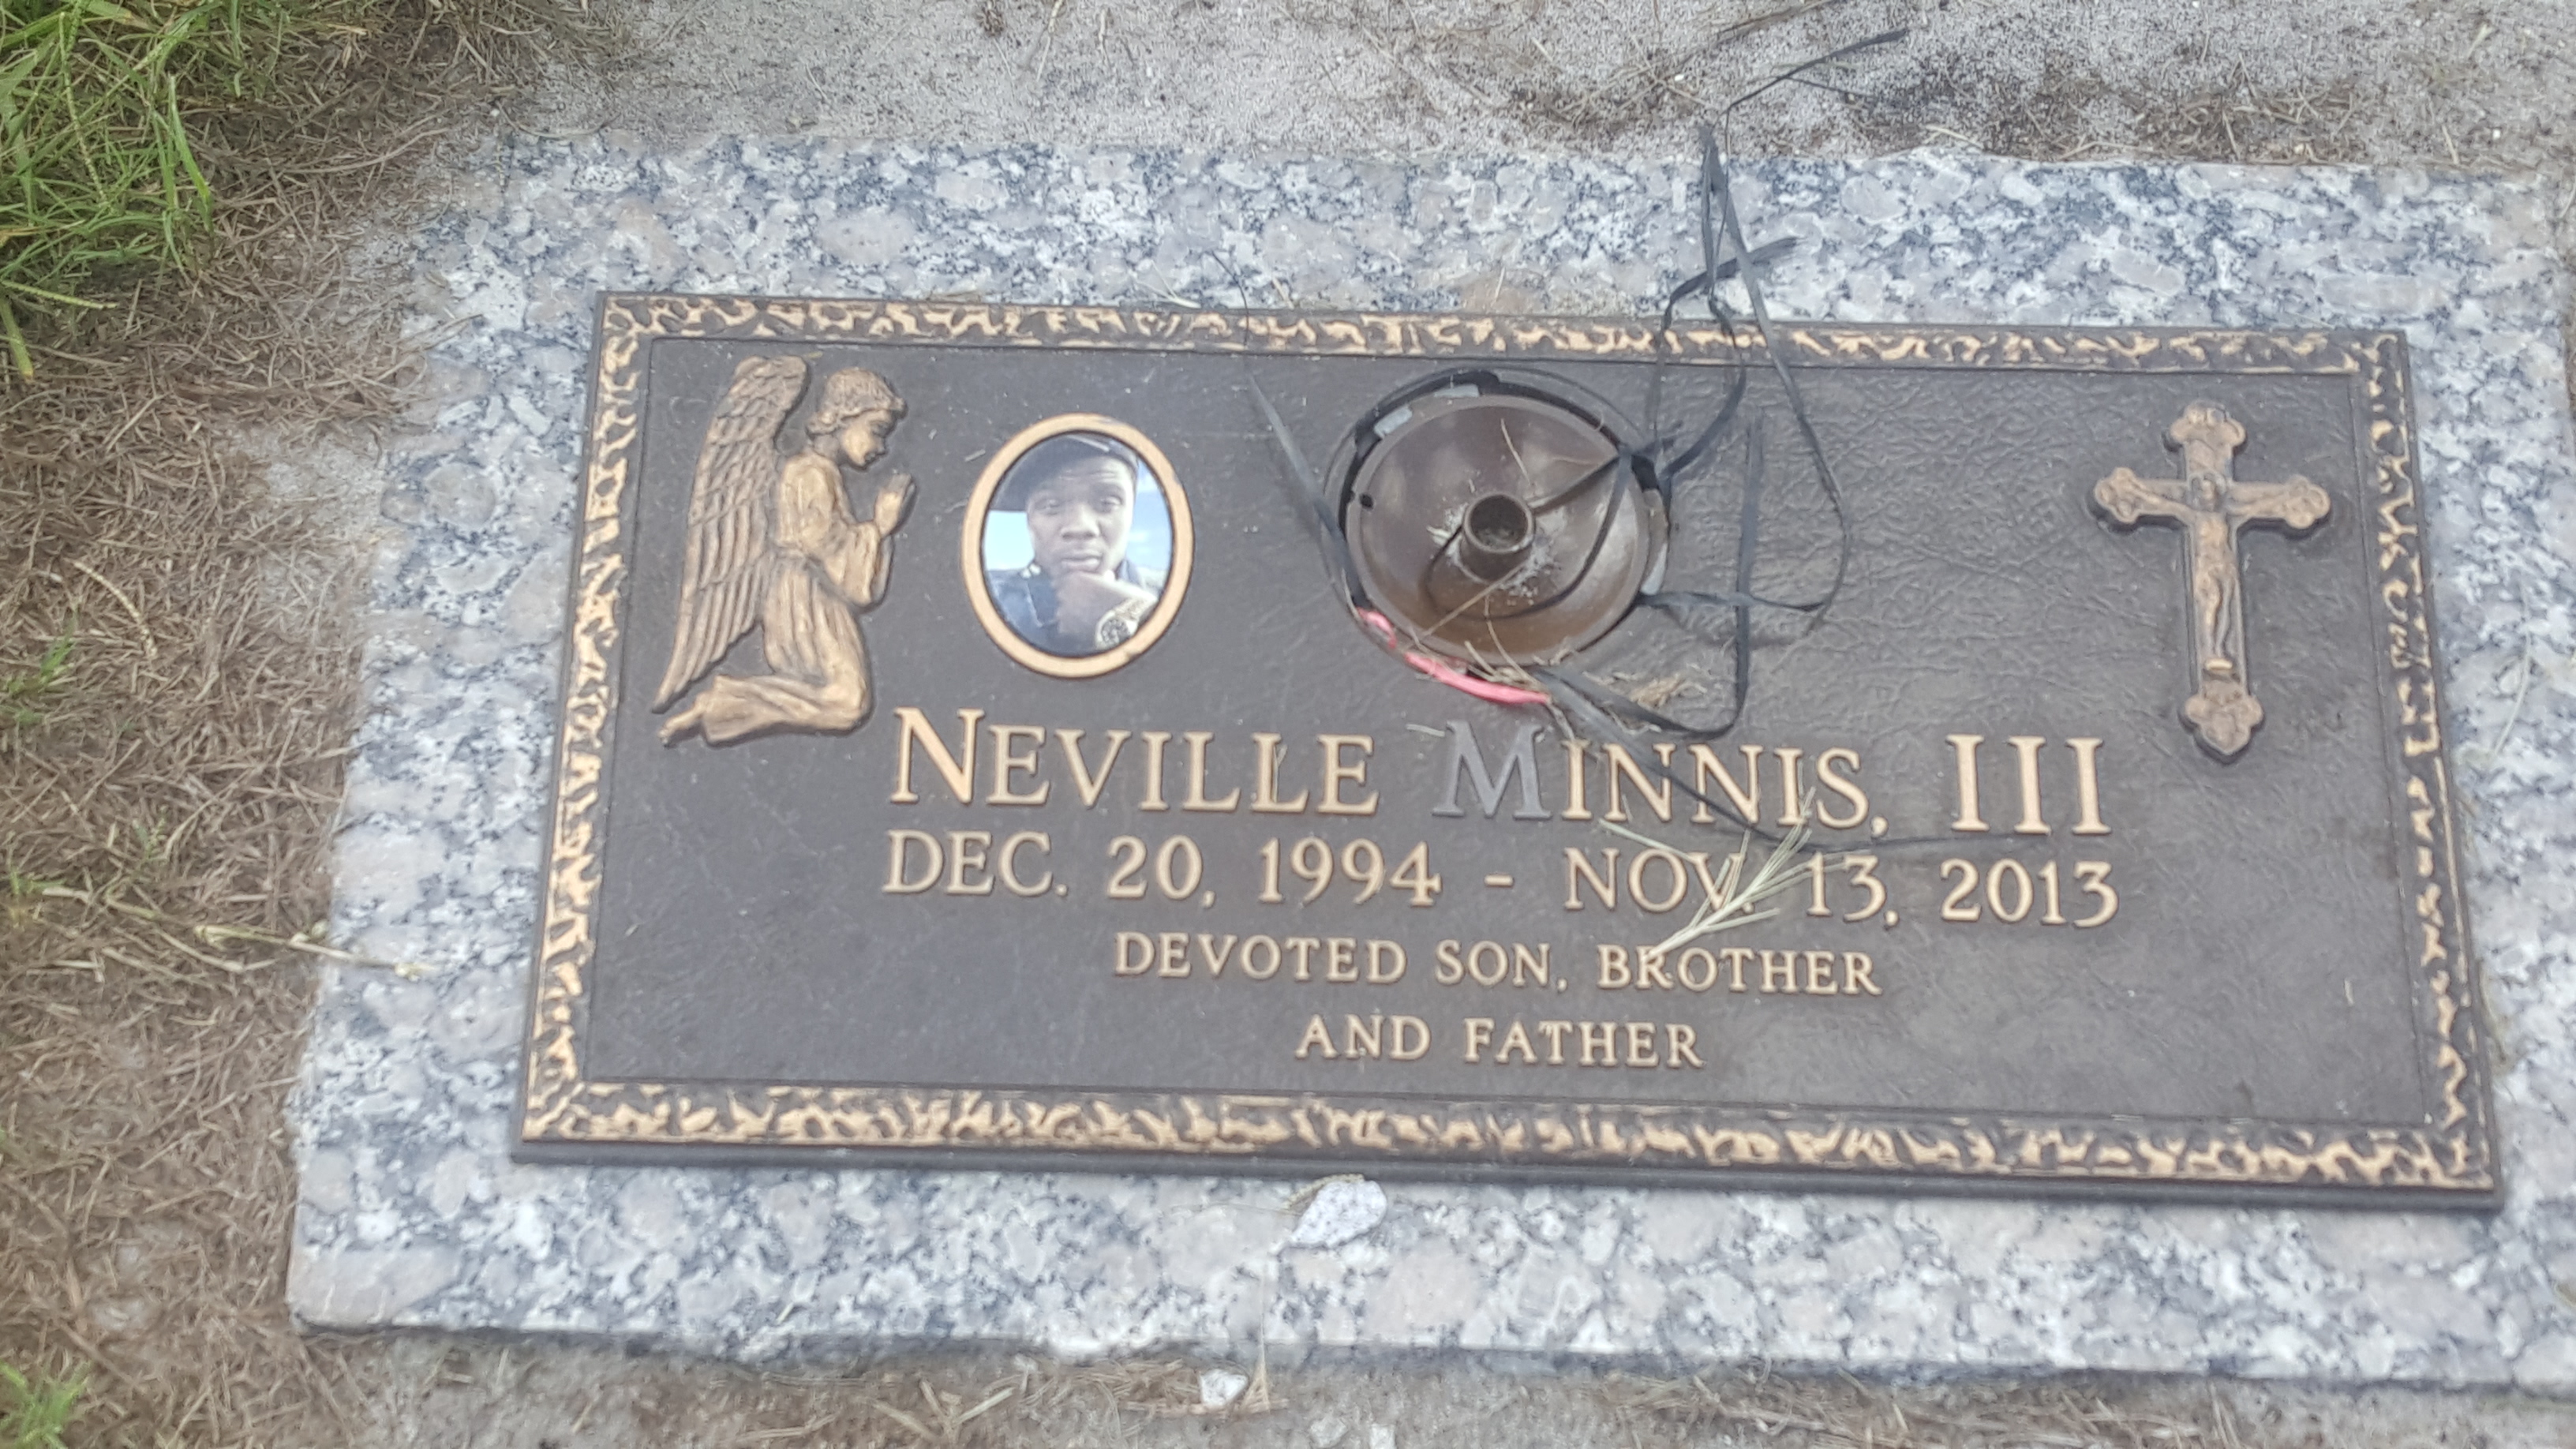 Neville Minnis, III